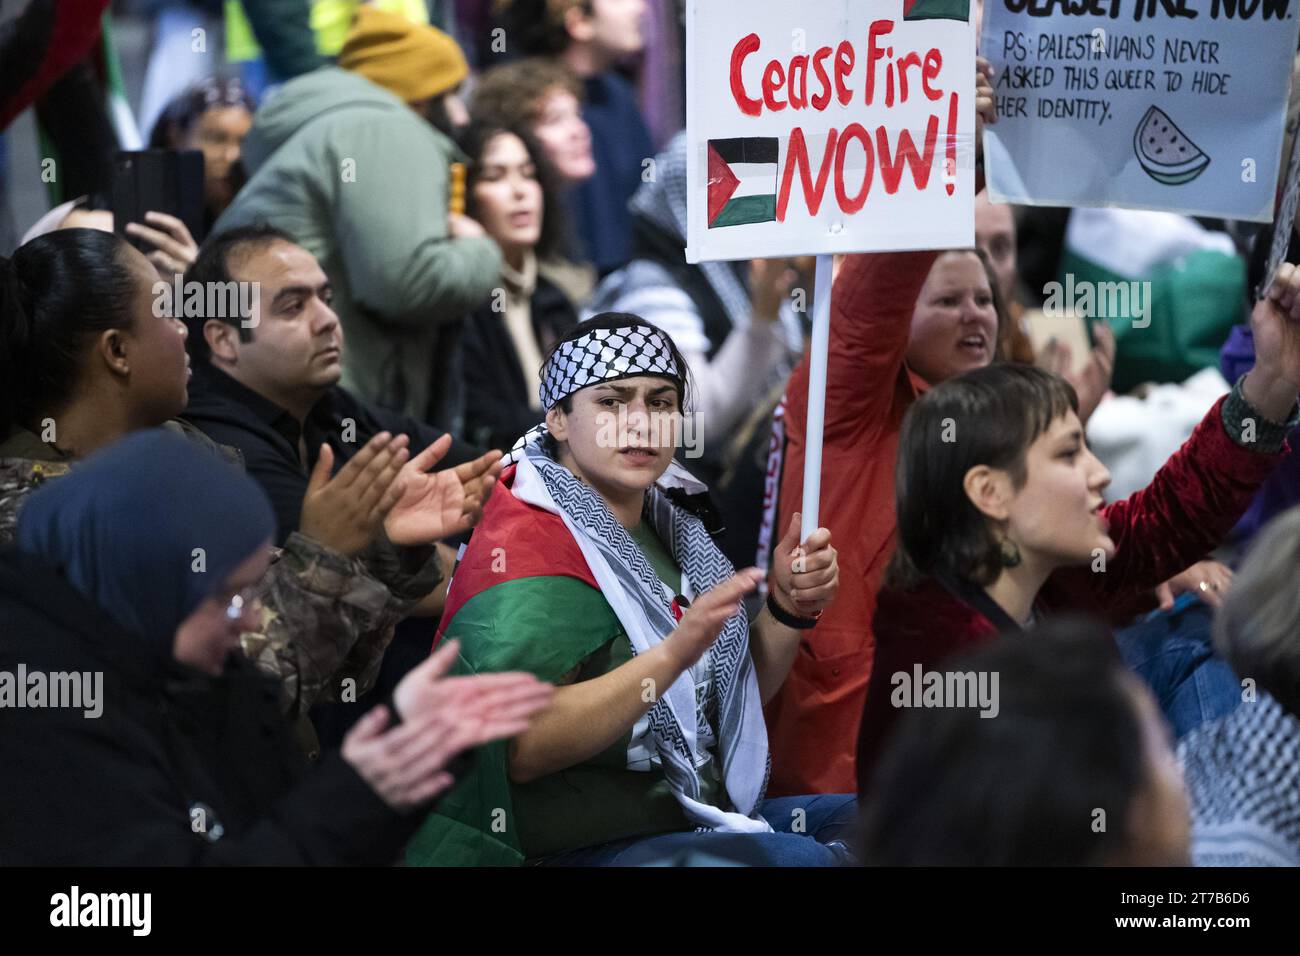 SCHIPHOL - Demonstranten halten einen Sit-in auf dem Schiphol Plaza ab, eine Form des Protestes, bei dem Demonstranten massenhaft auf dem Boden sitzen. Der Protest wurde von einer Aktionsgruppe organisiert, um Solidarität mit Gaza zu zeigen. ANP JEROEN JUMELET niederlande Out - belgien Out Stockfoto